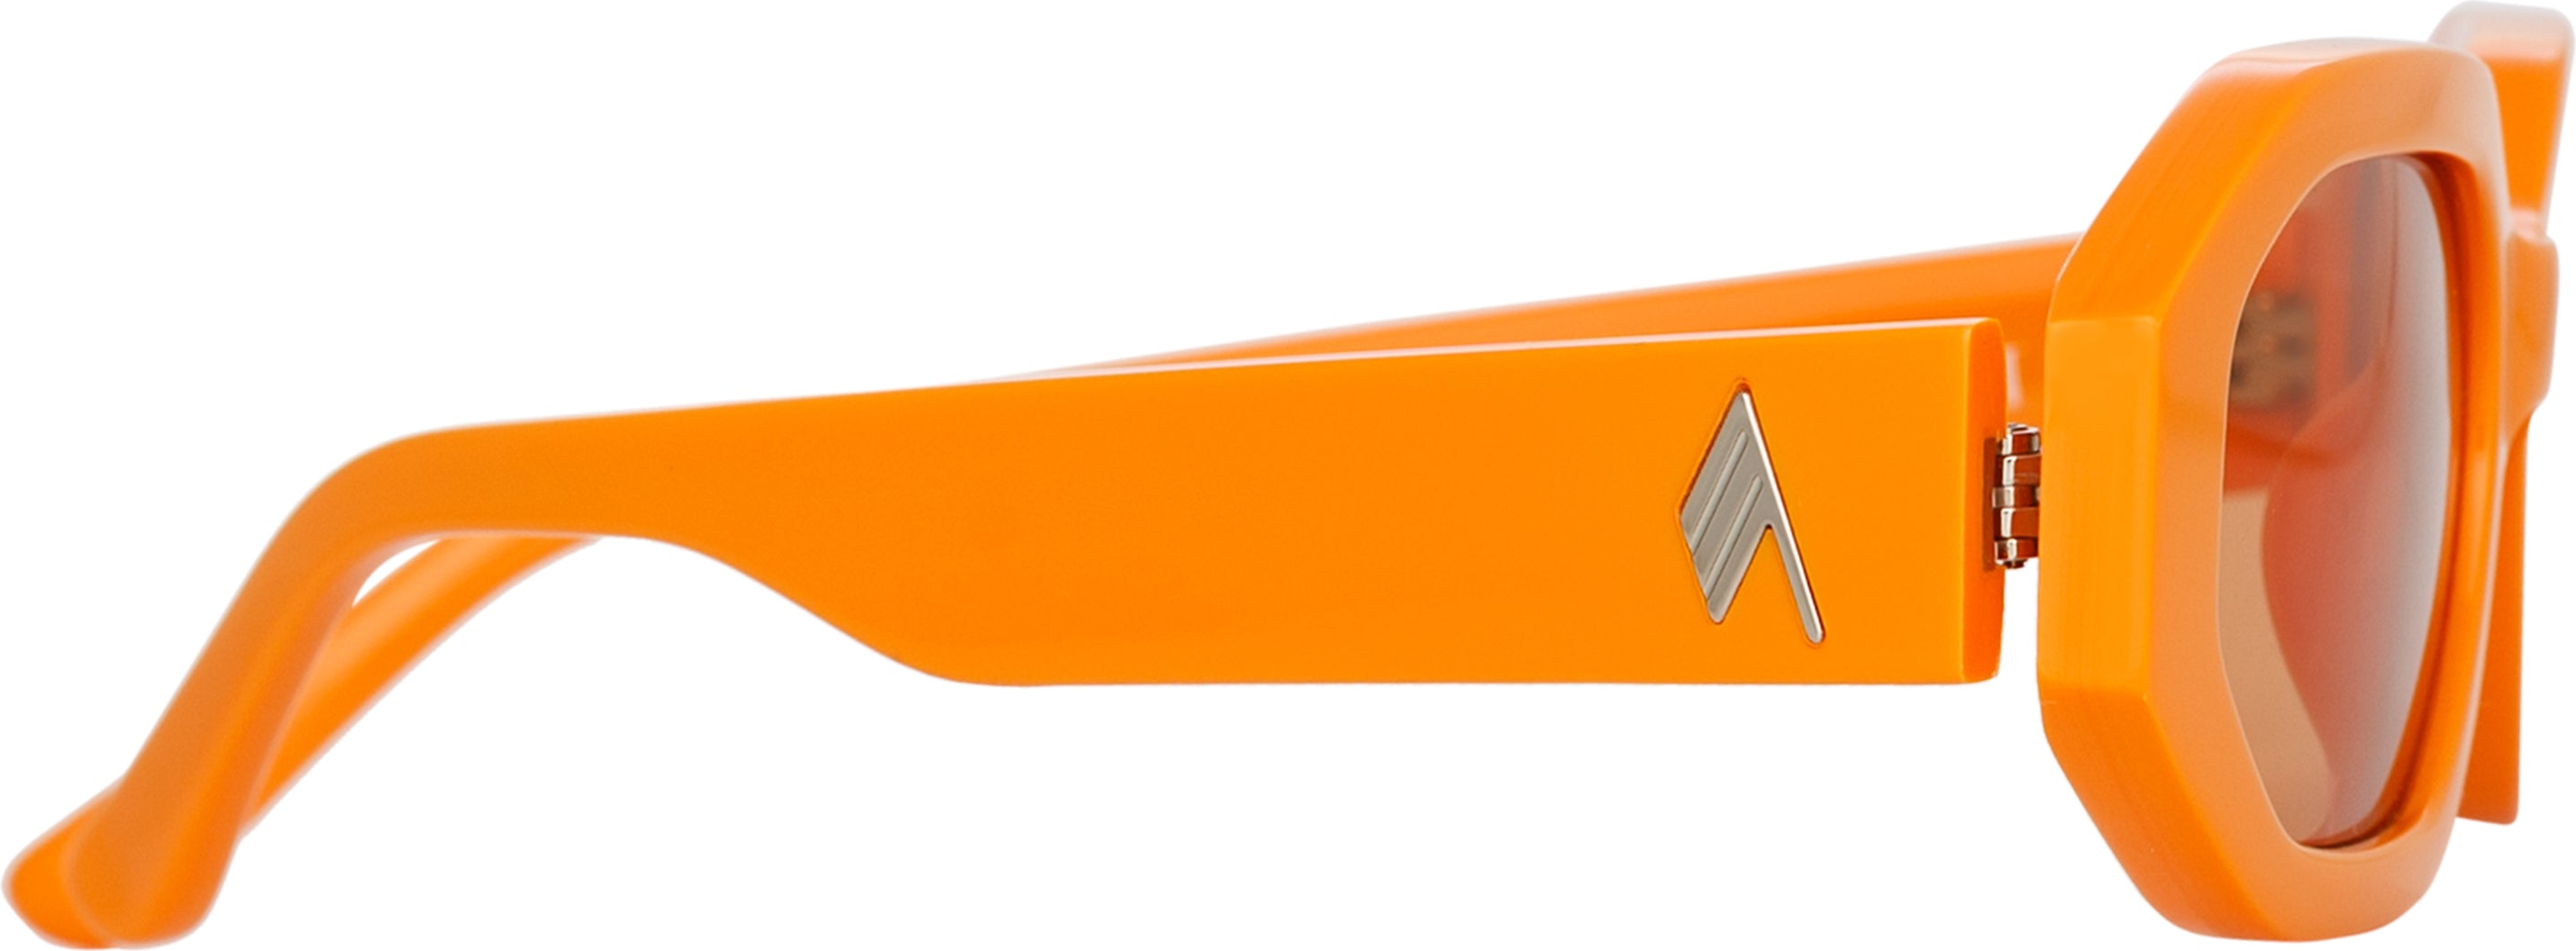 Color_ATTICO14C10SUN - The Attico Irene Angular Sunglasses in Orange